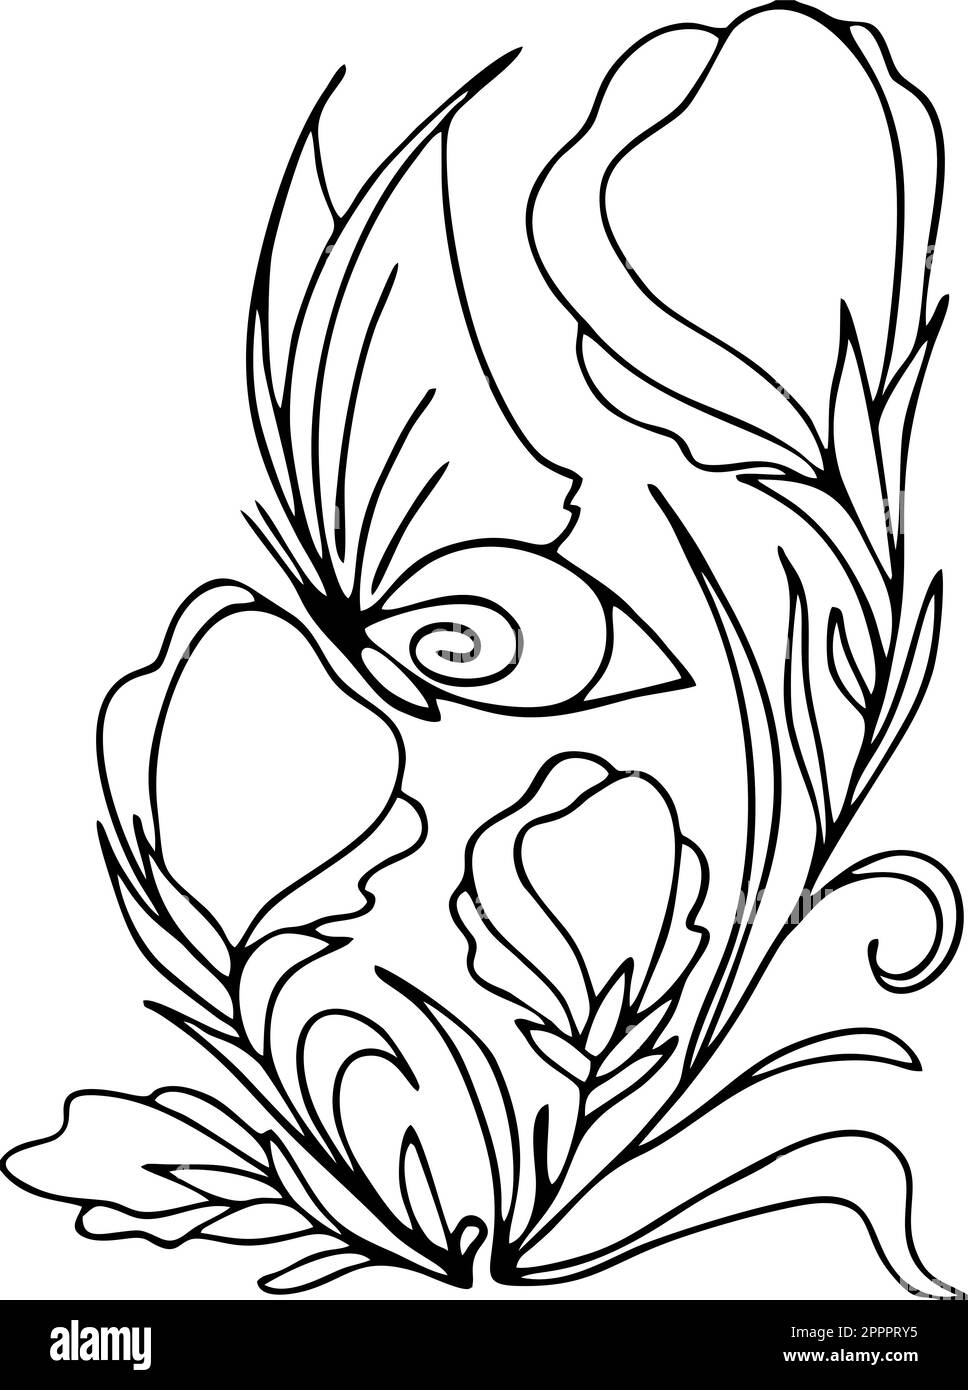 disegno grafico a contorno nero di un bouquet di fiori su sfondo bianco, disegno Foto Stock